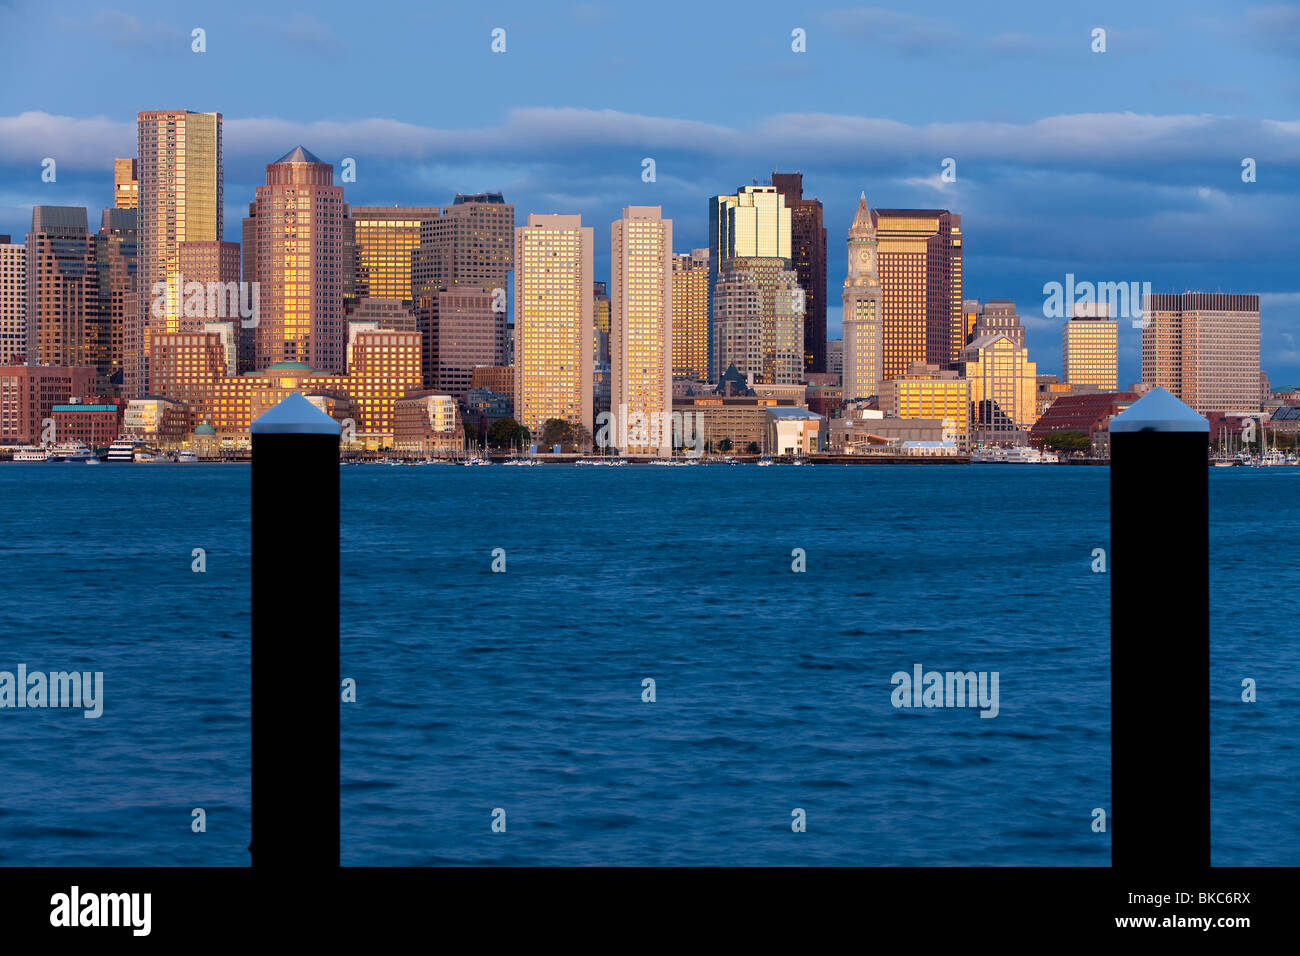 États-unis, Massachusetts, Boston, ville skline vue sur le port de Boston à l'aube Banque D'Images